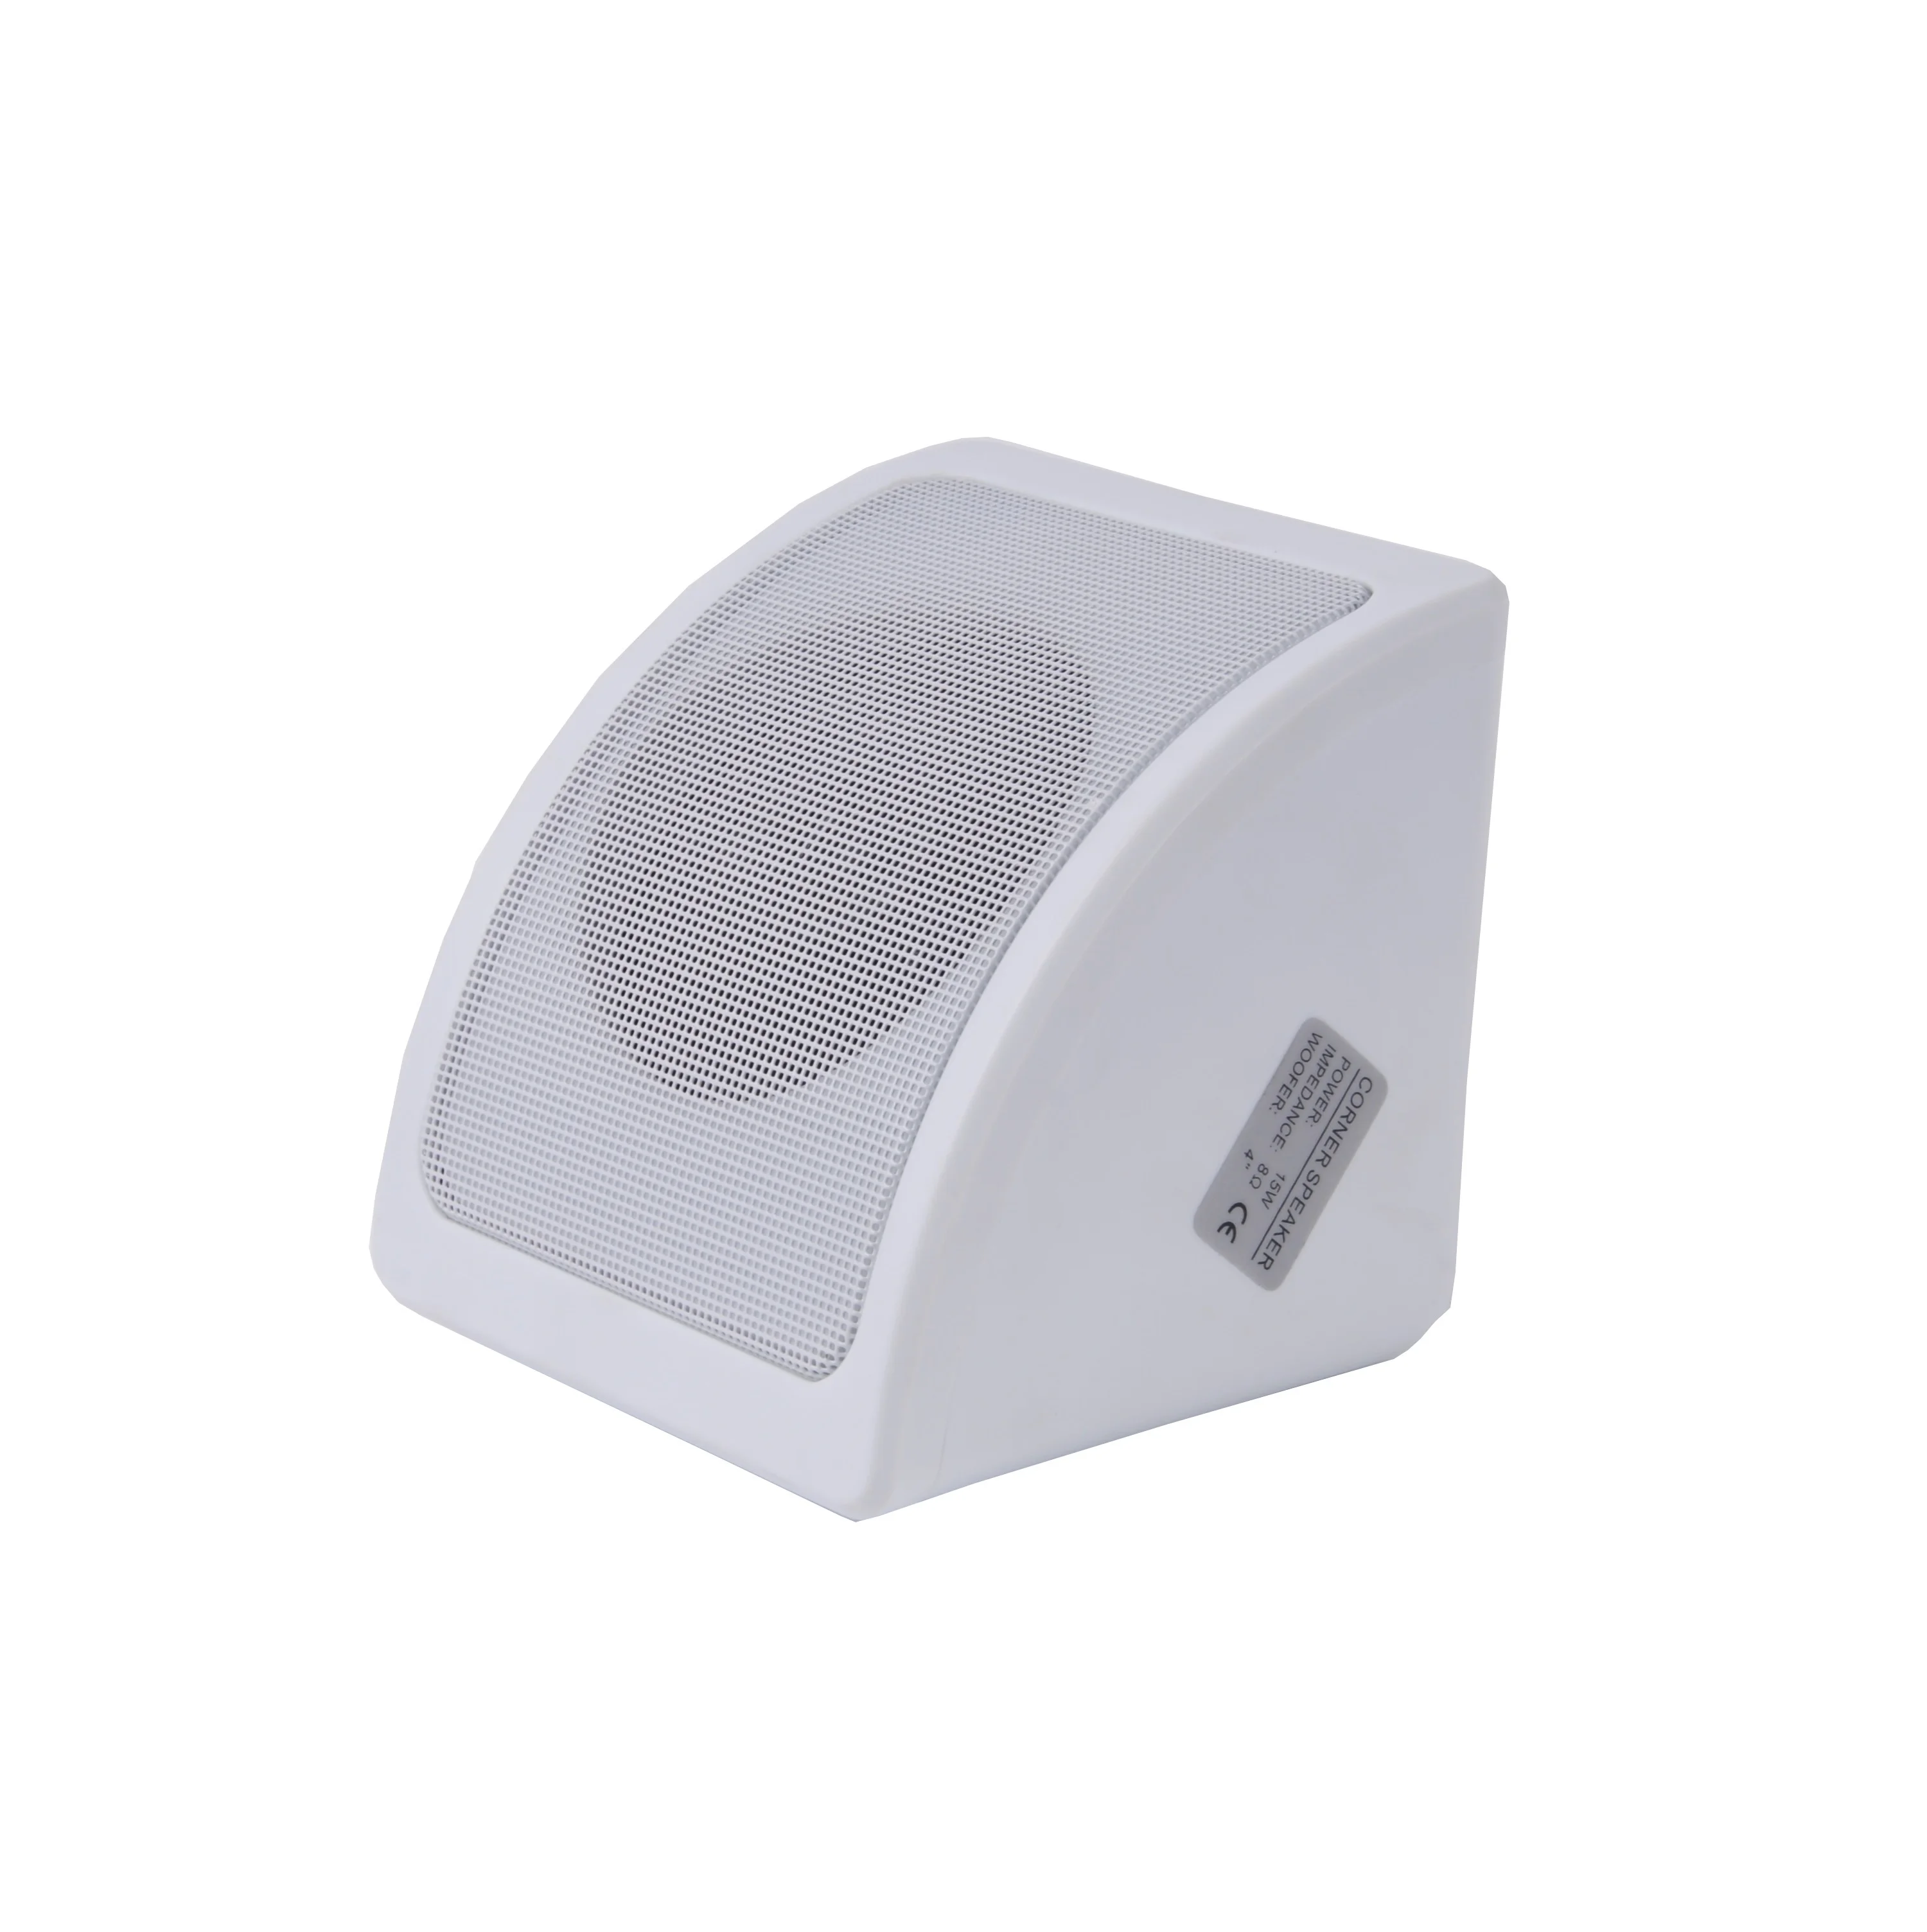 Corner Speakers Wall Mounted Flash Sales, 53% OFF | www.vetyvet.com